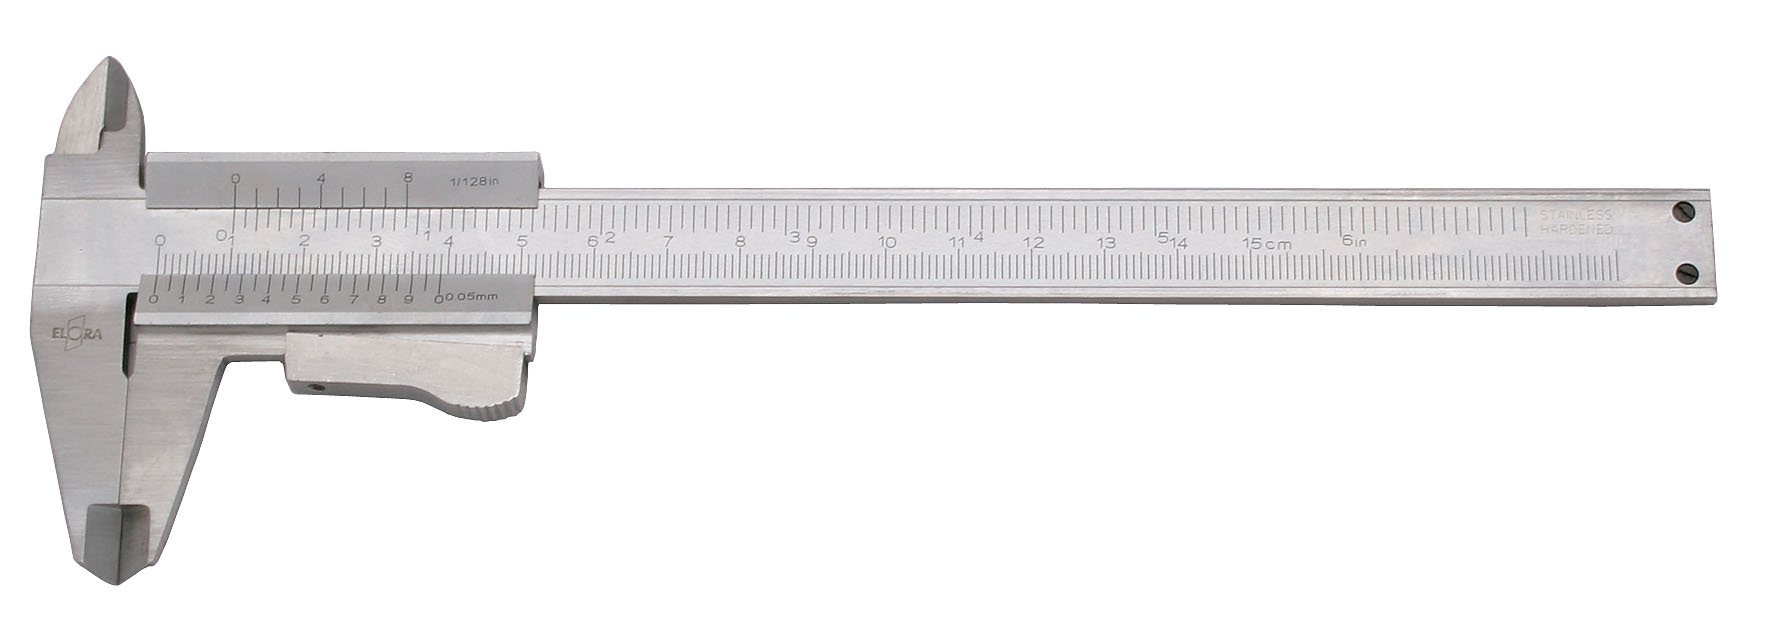 Elora Präzisions-Taschenmessschieber, Messbereich 150 mm, 1 Stück, 1512